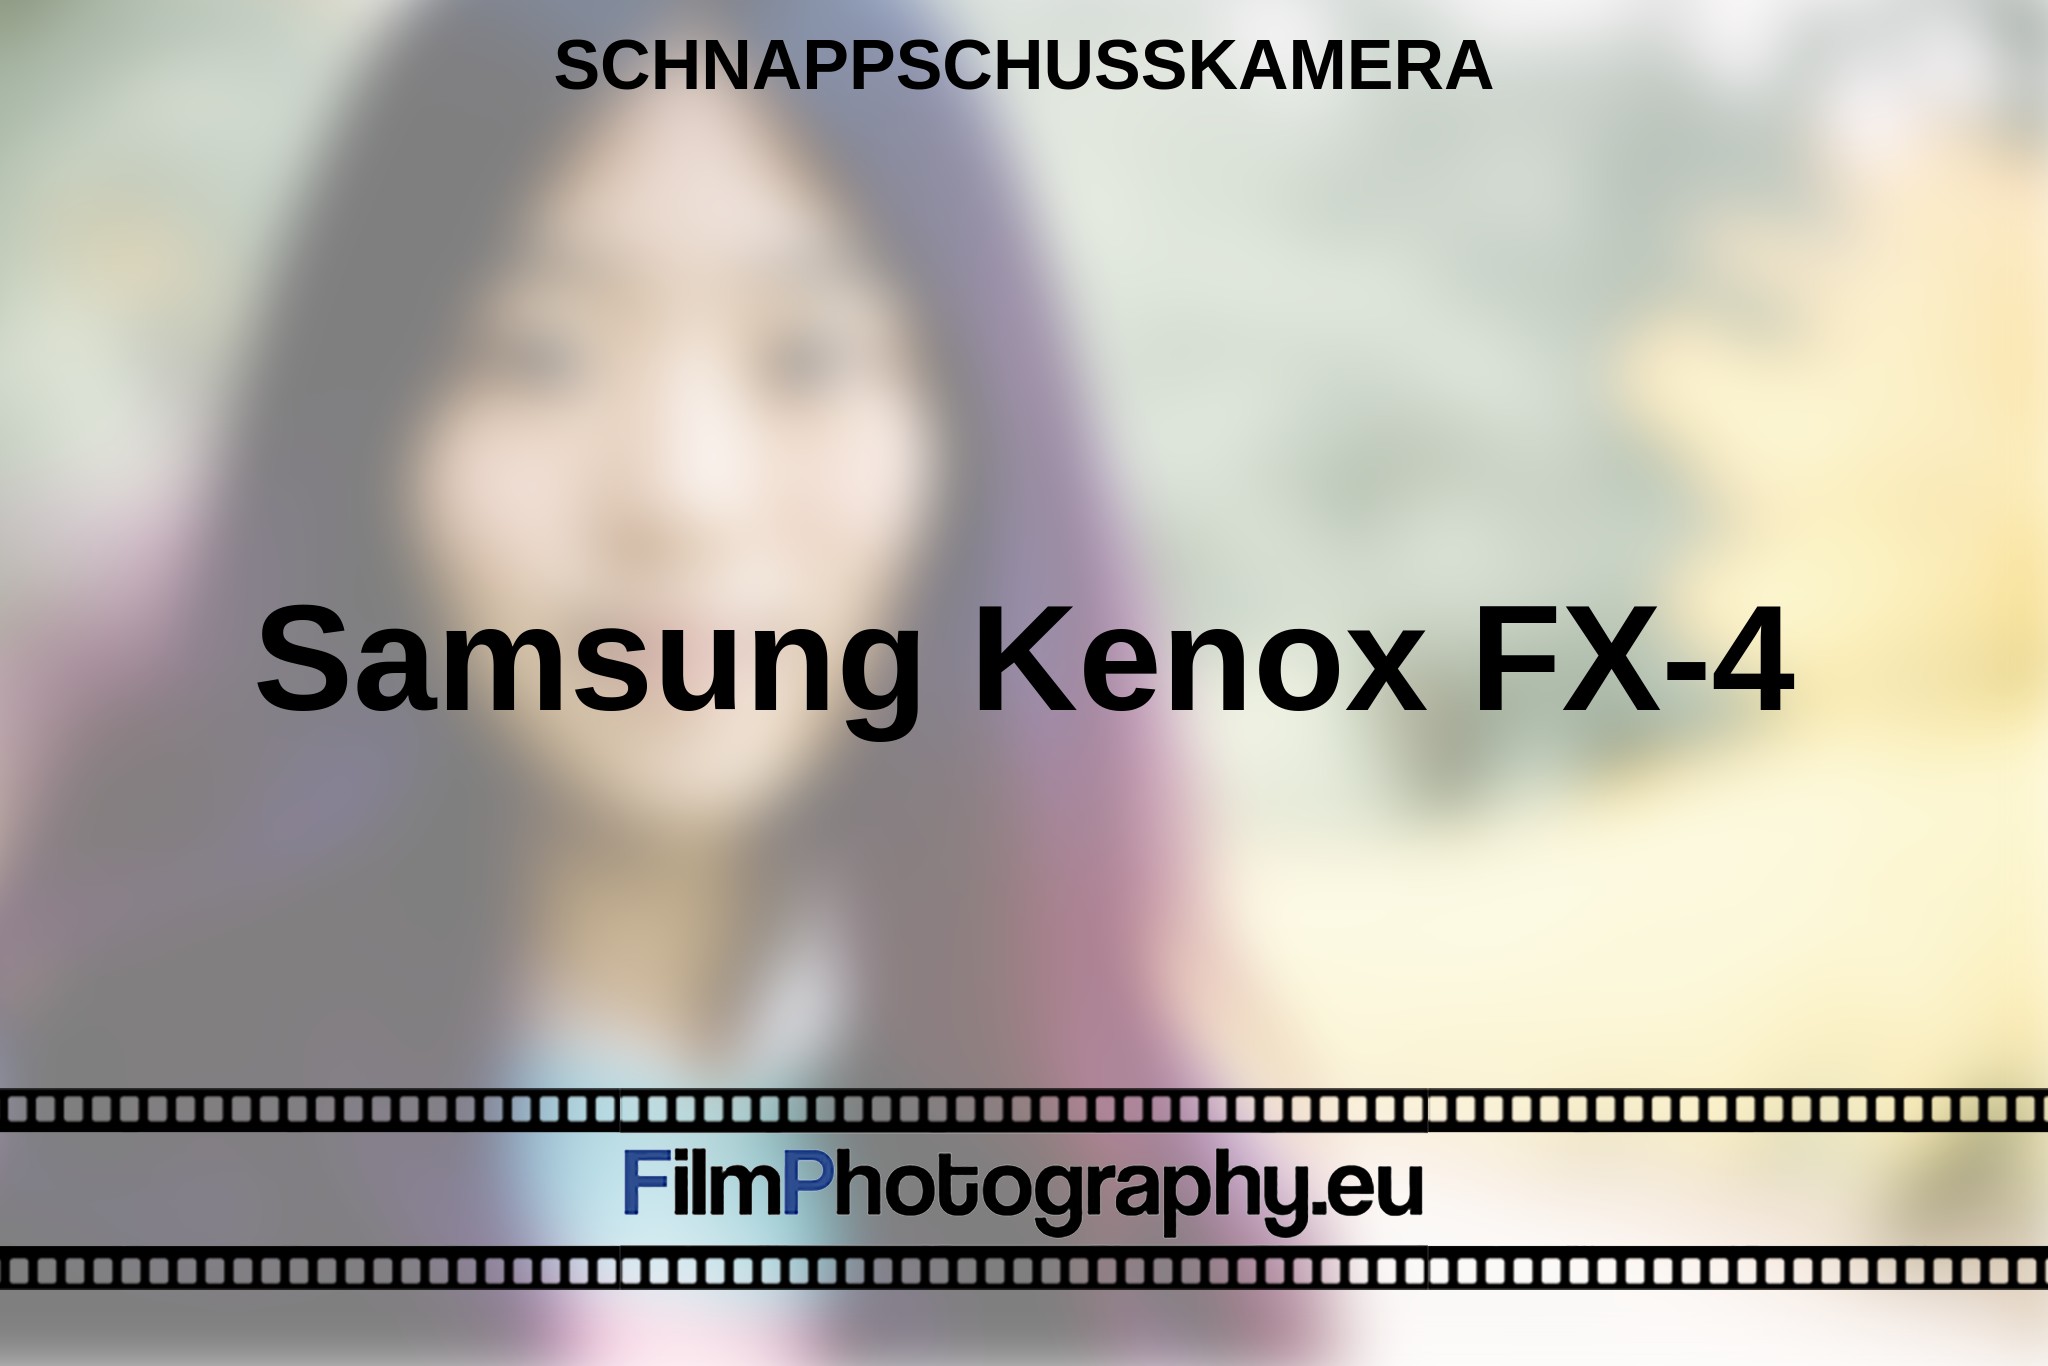 samsung-kenox-fx-4-schnappschusskamera-bnv.jpg